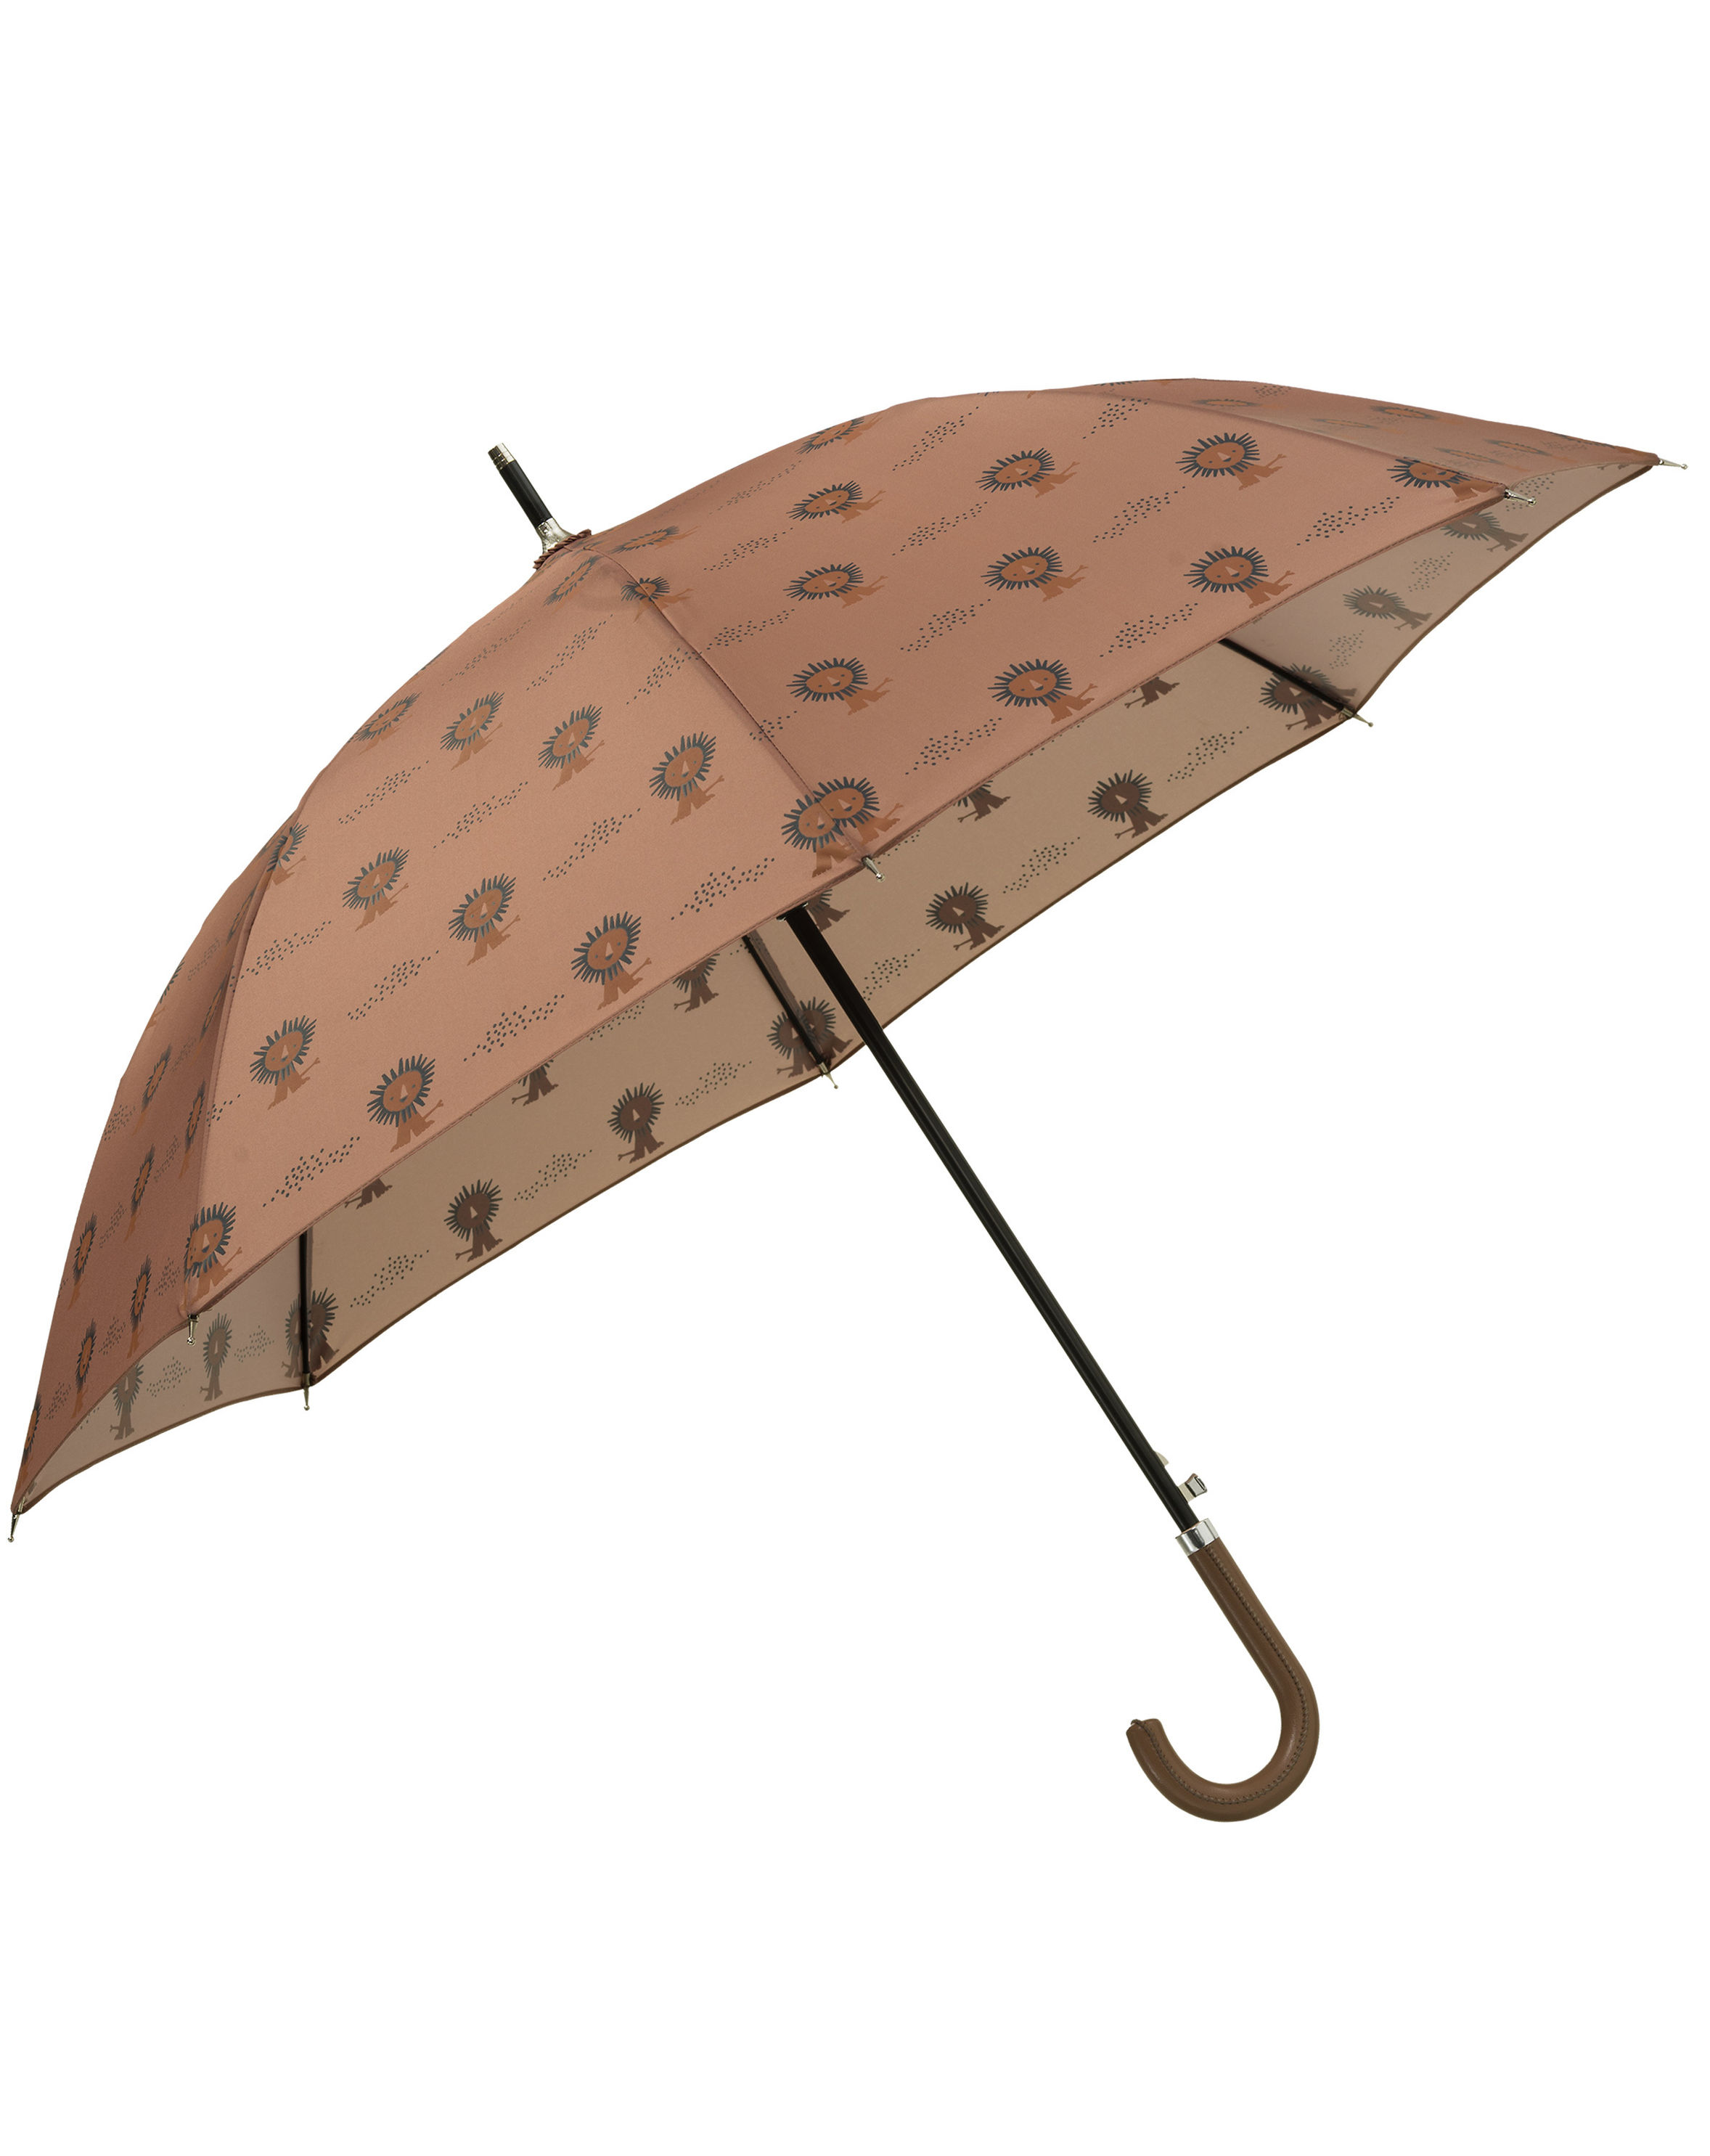 Regenschirm LÖWE in braun kaufen | tausendkind.de